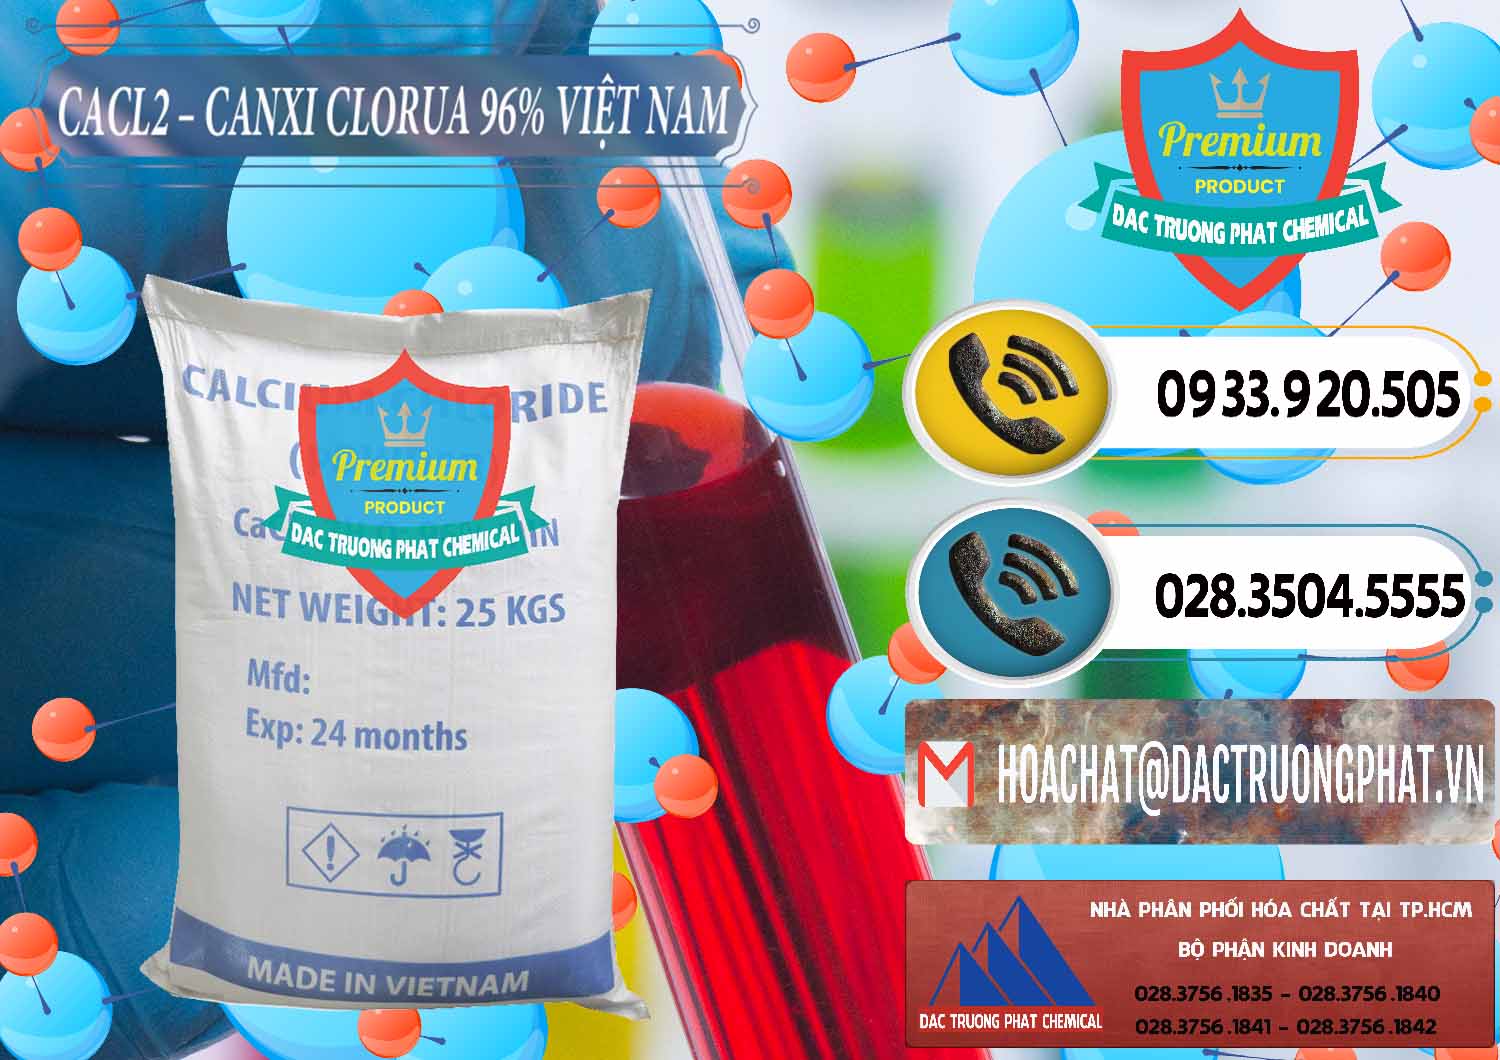 Đơn vị chuyên phân phối và bán CaCl2 – Canxi Clorua 96% Việt Nam - 0236 - Cung cấp & bán hóa chất tại TP.HCM - hoachatdetnhuom.vn